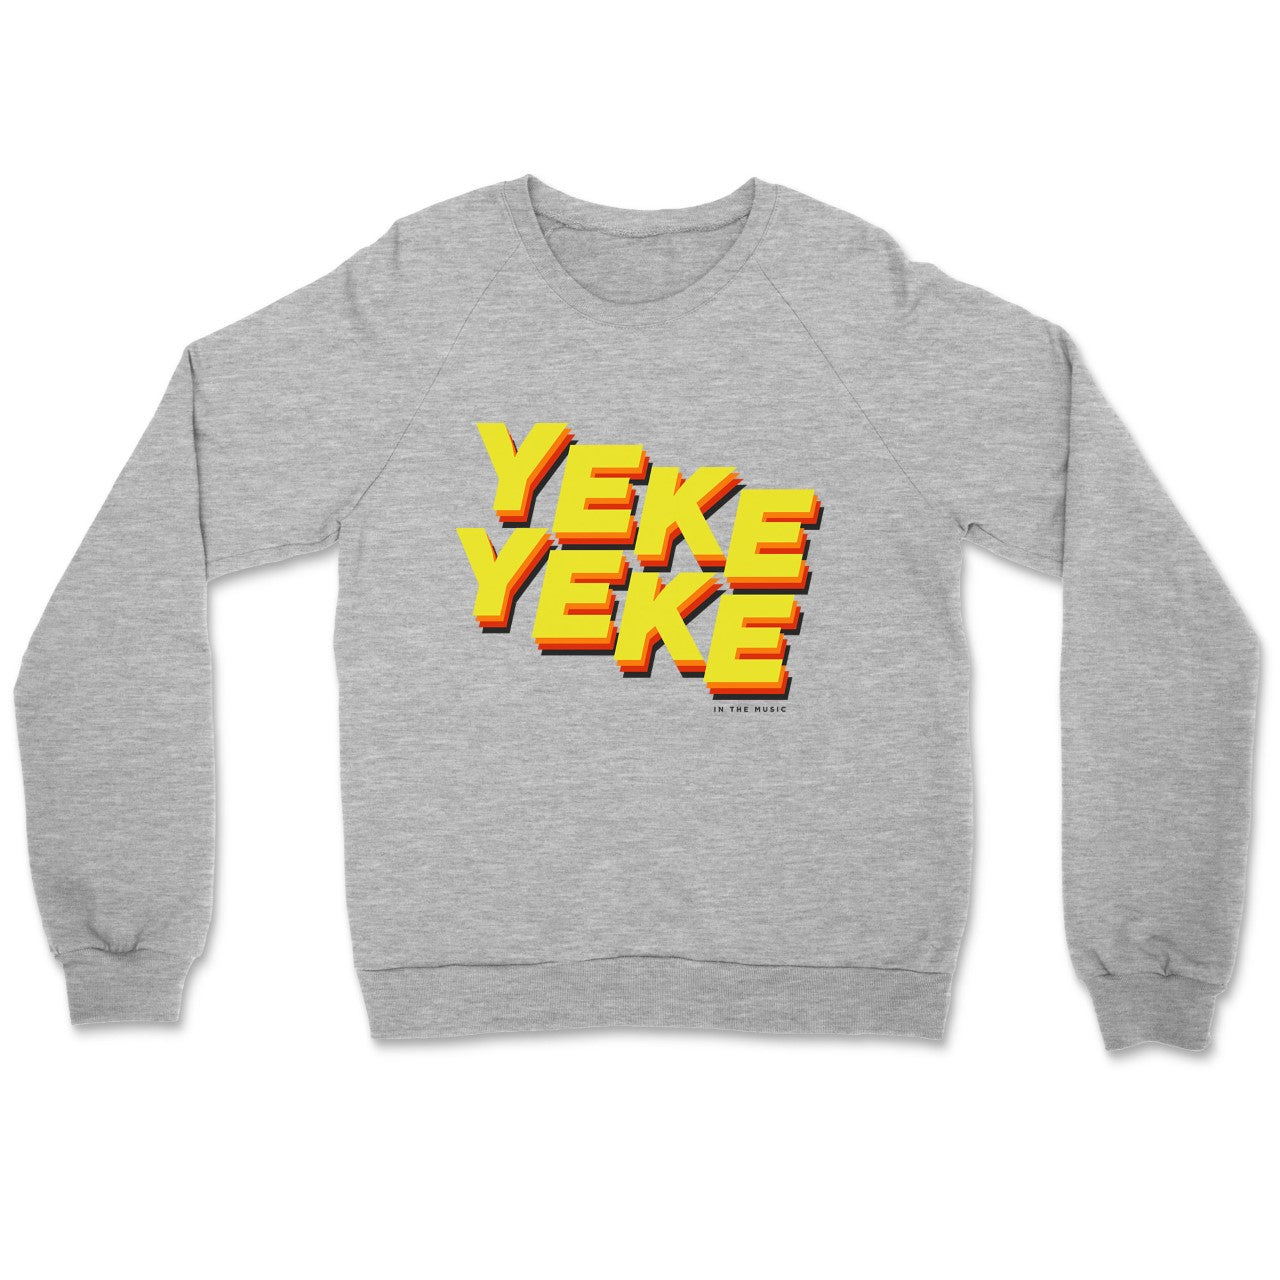 Yeke Yeke Sweatshirt Original